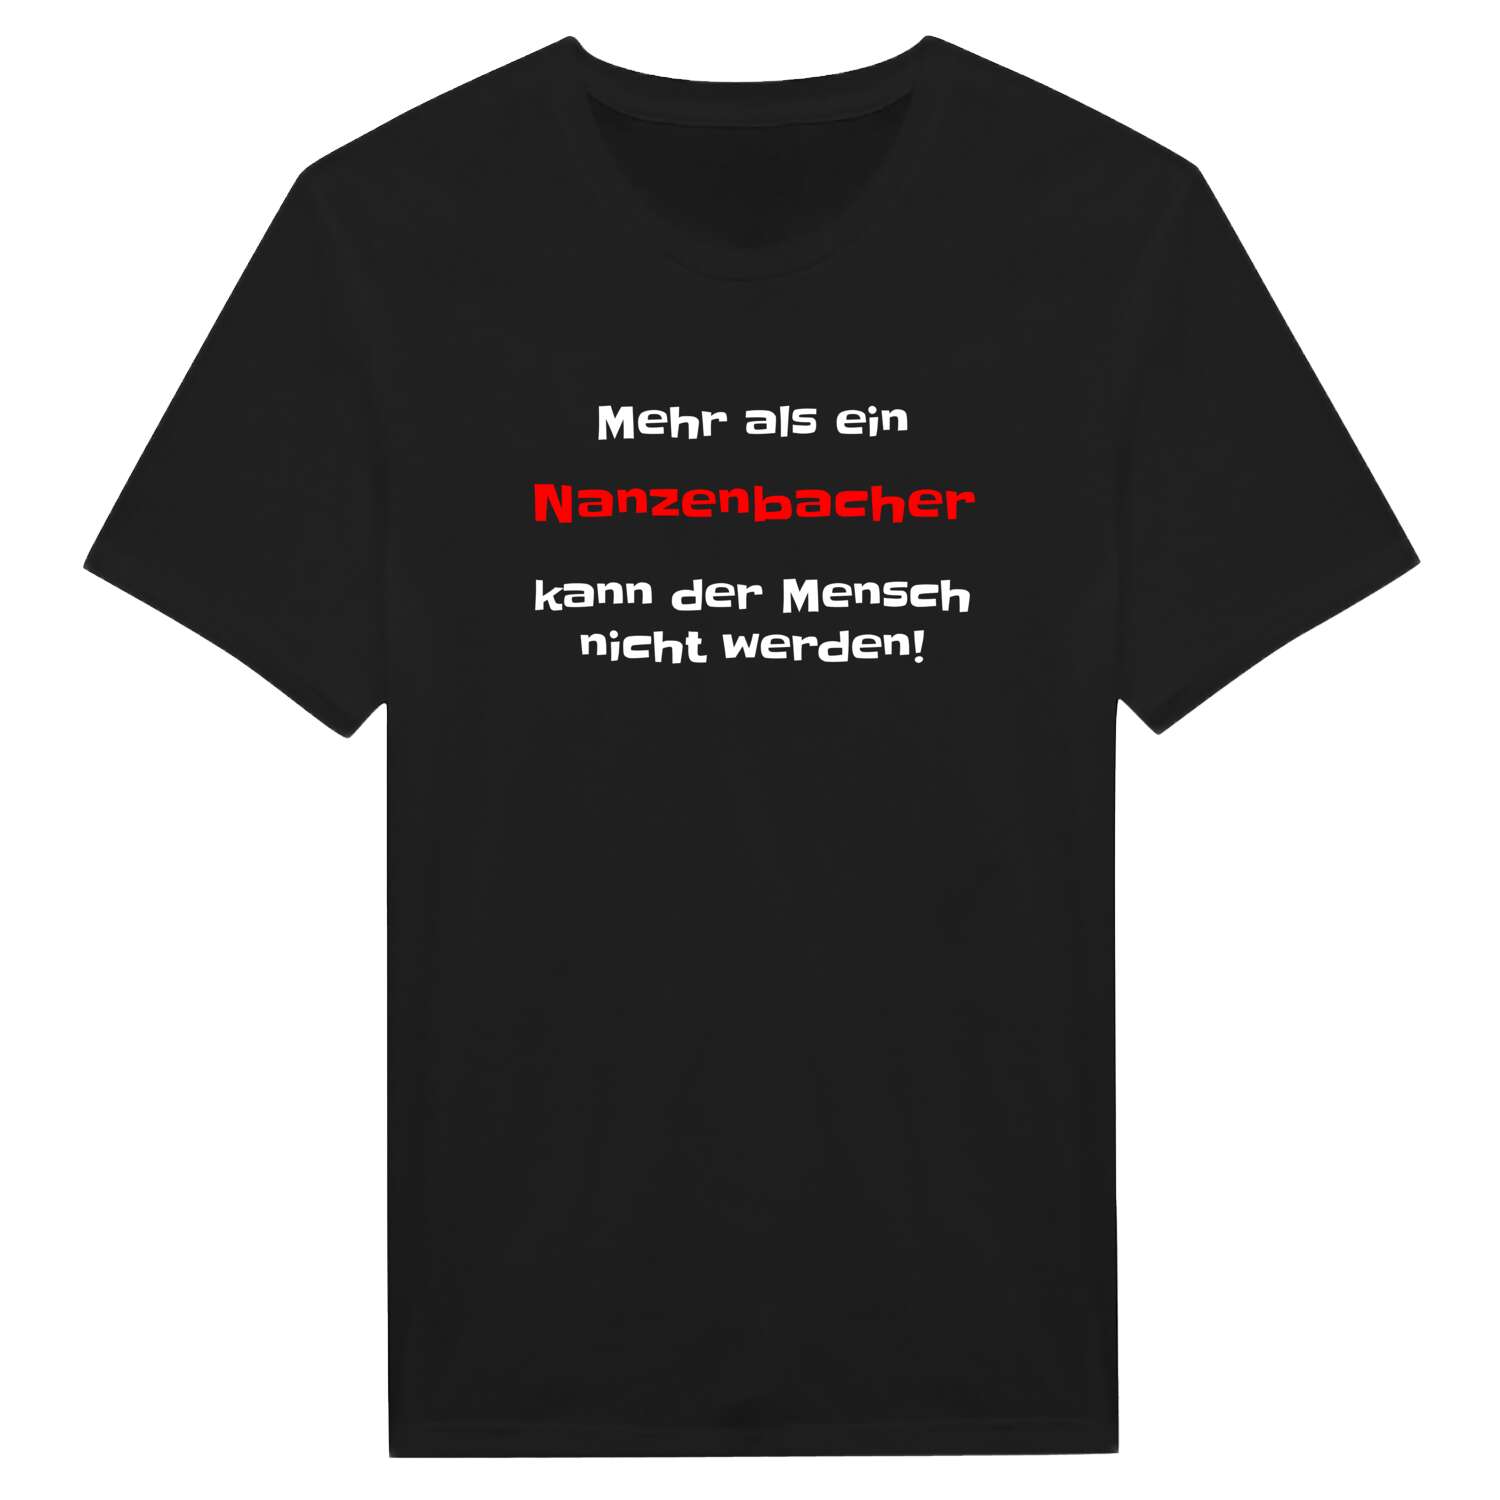 Nanzenbach T-Shirt »Mehr als ein«